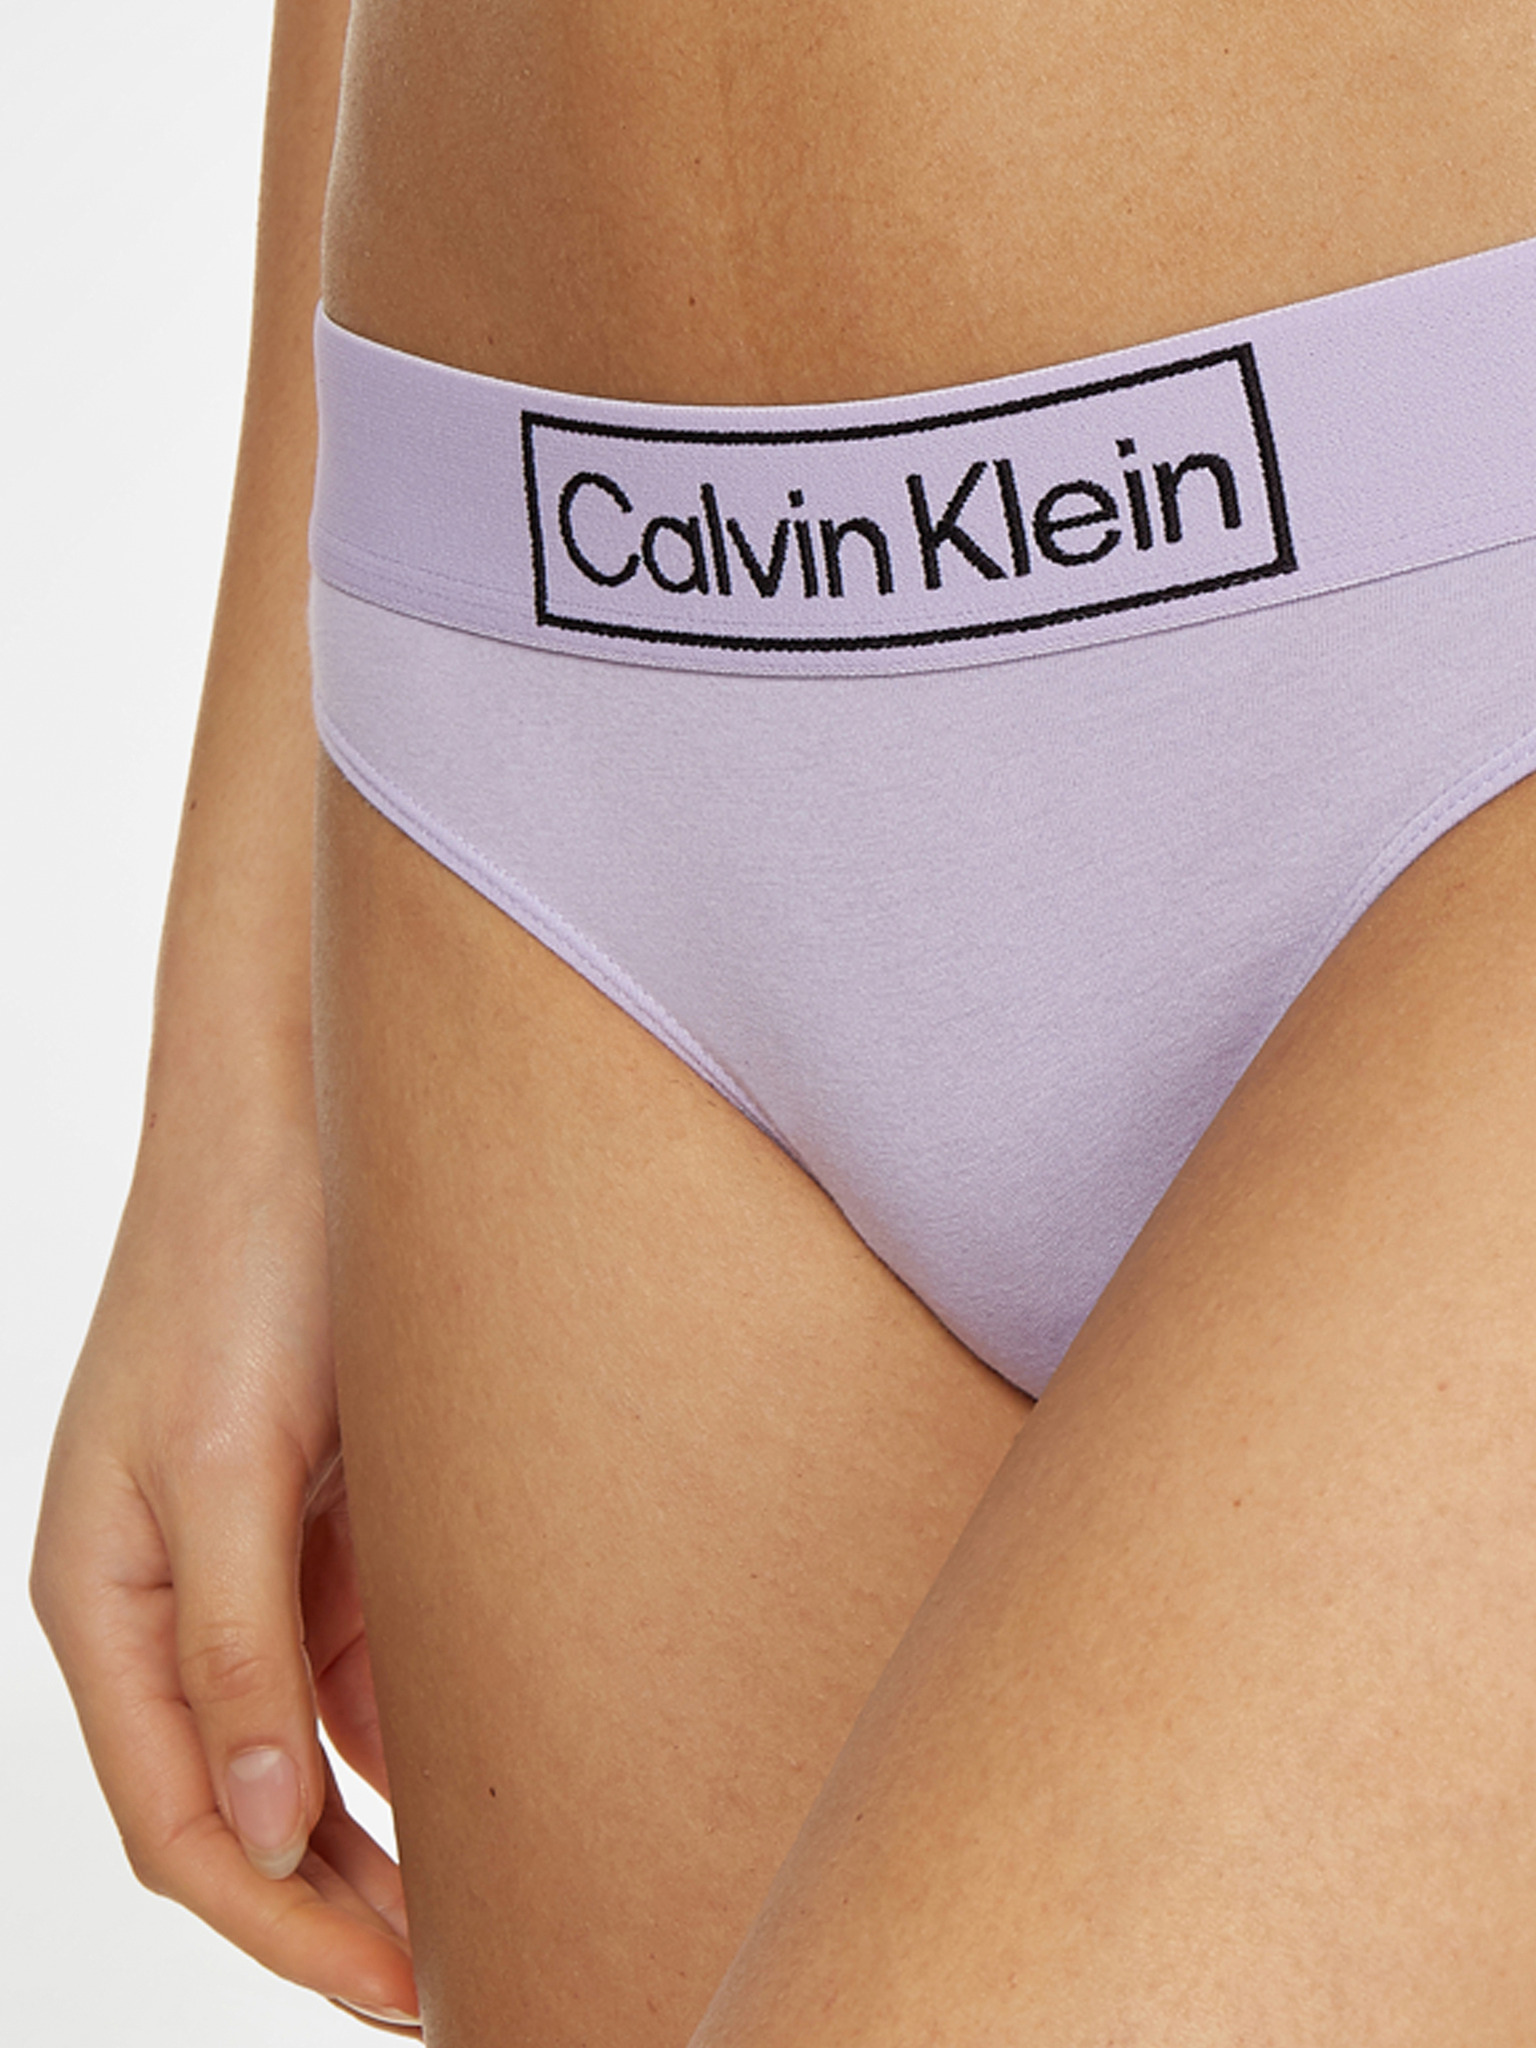 Briefs Calvin Klein High Waist Thong